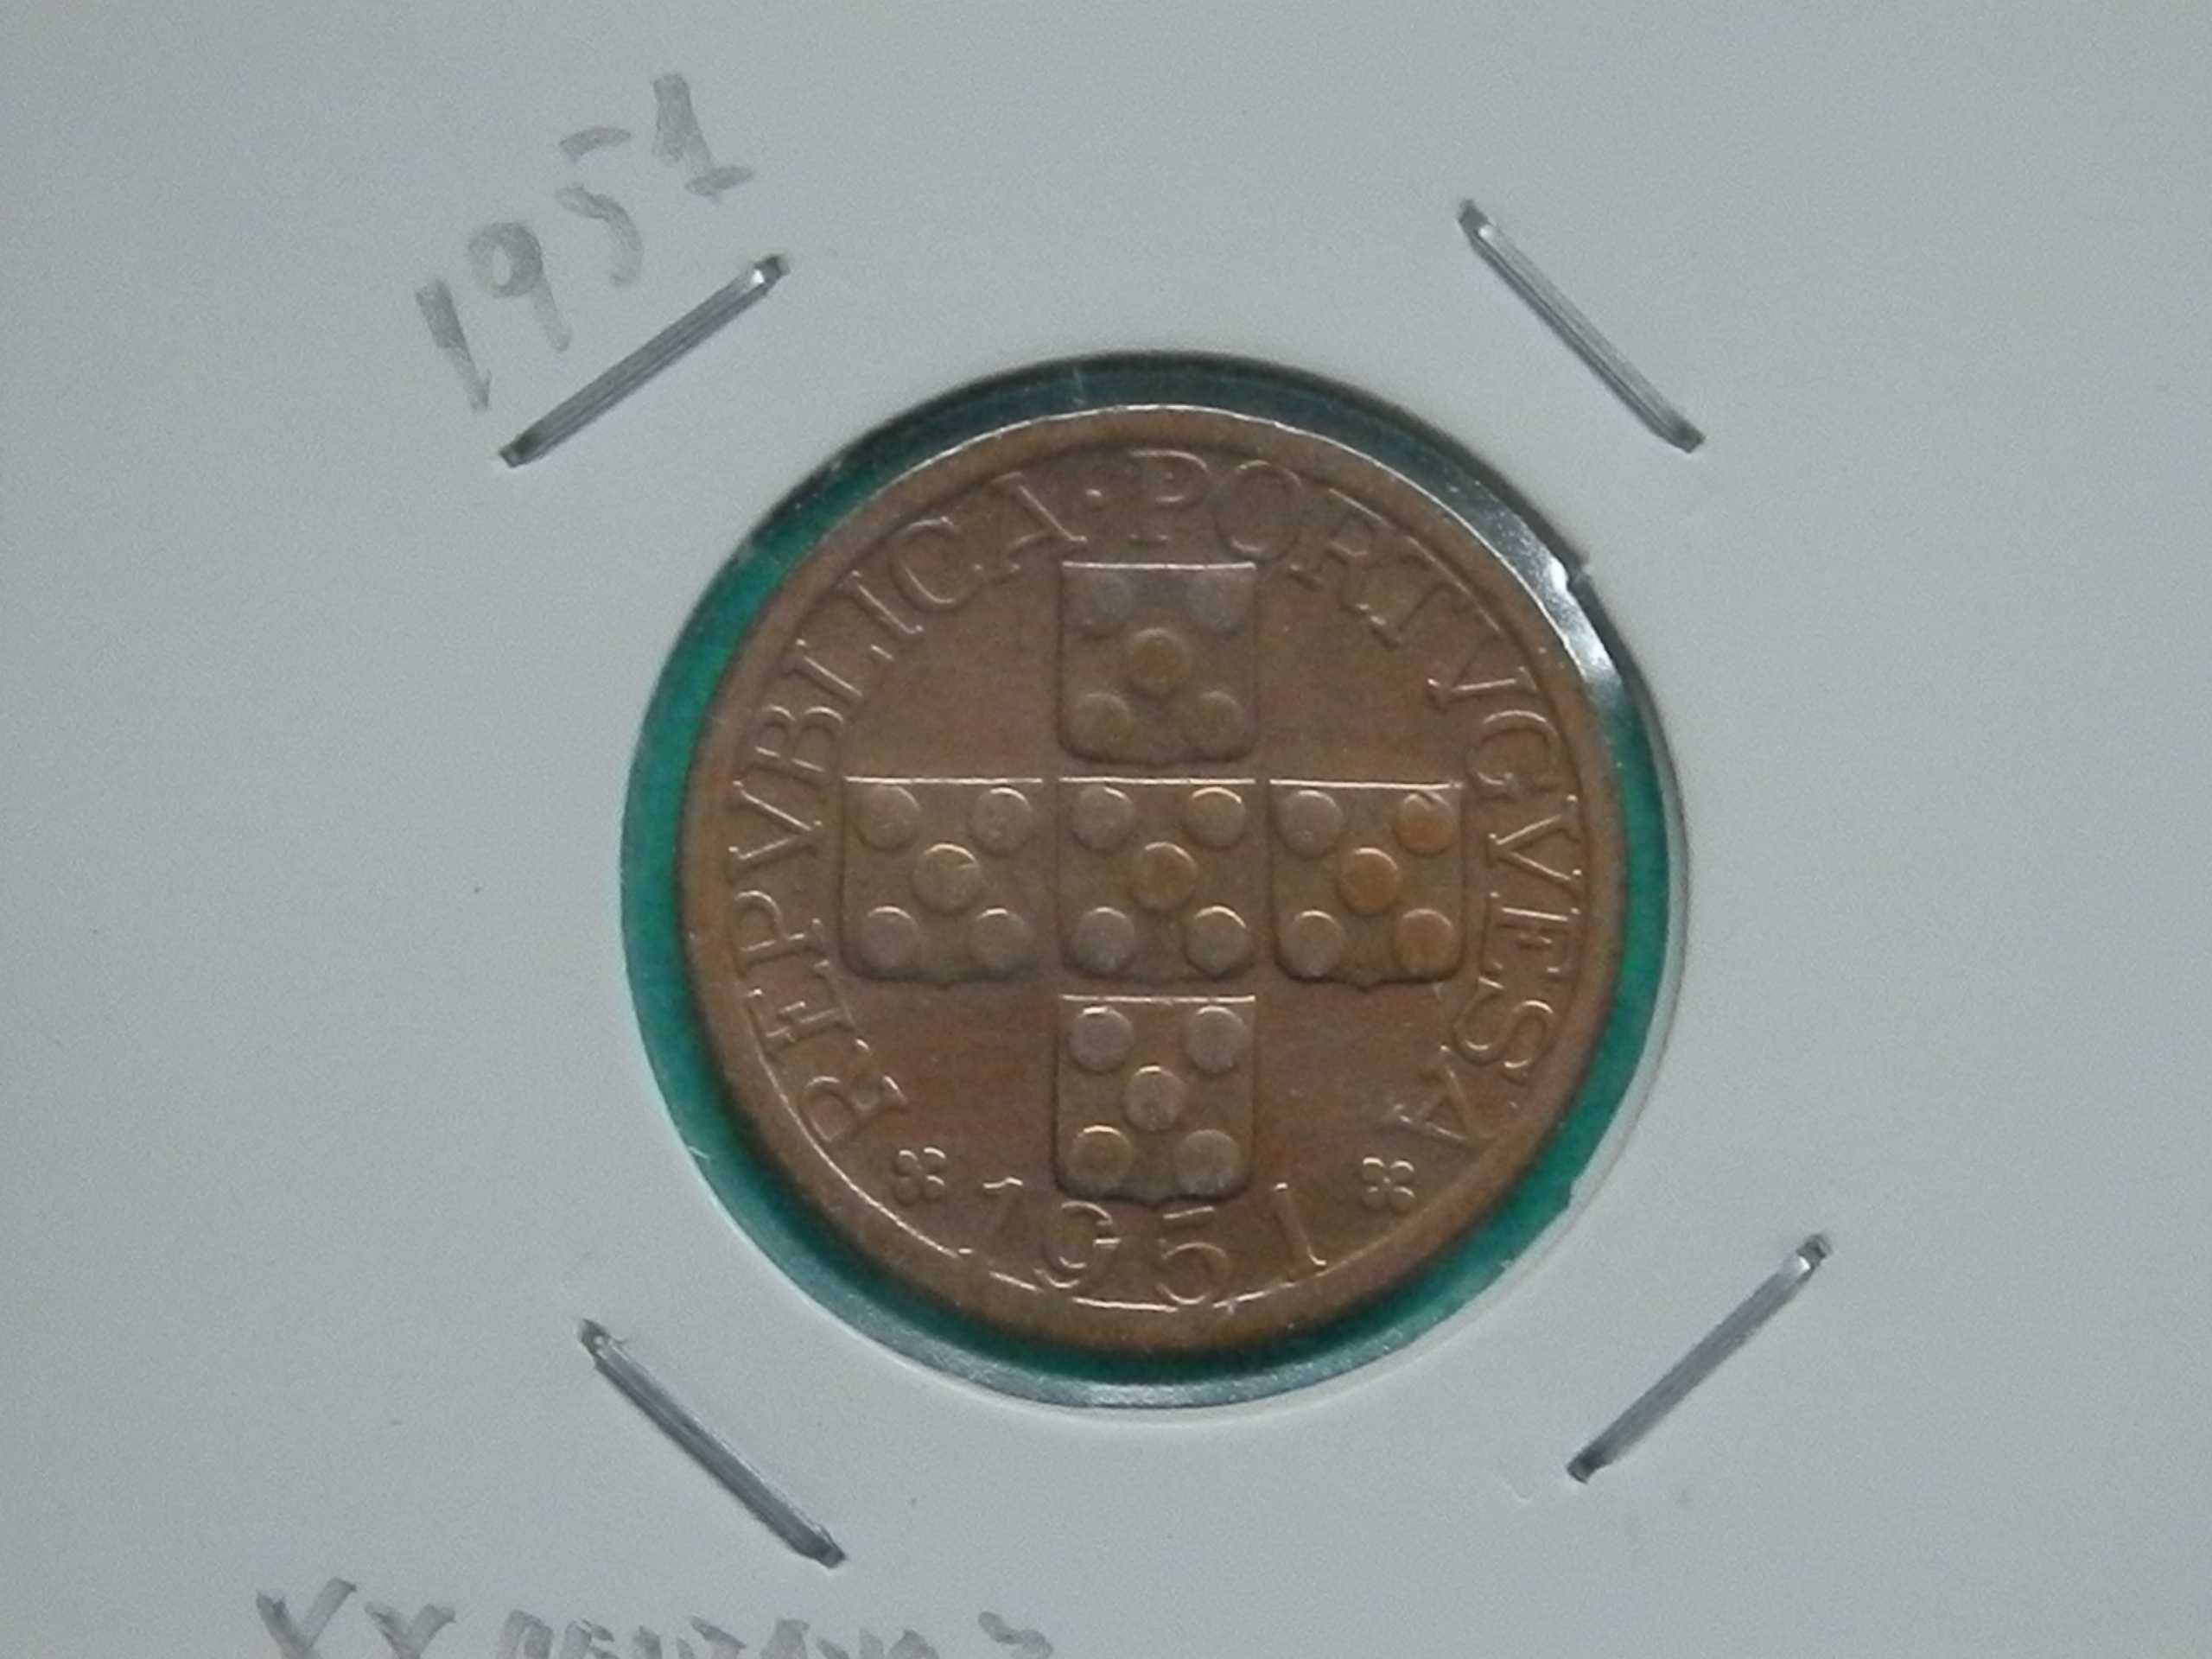 903 - República: XX centavos 1951 bronze, por 4,00